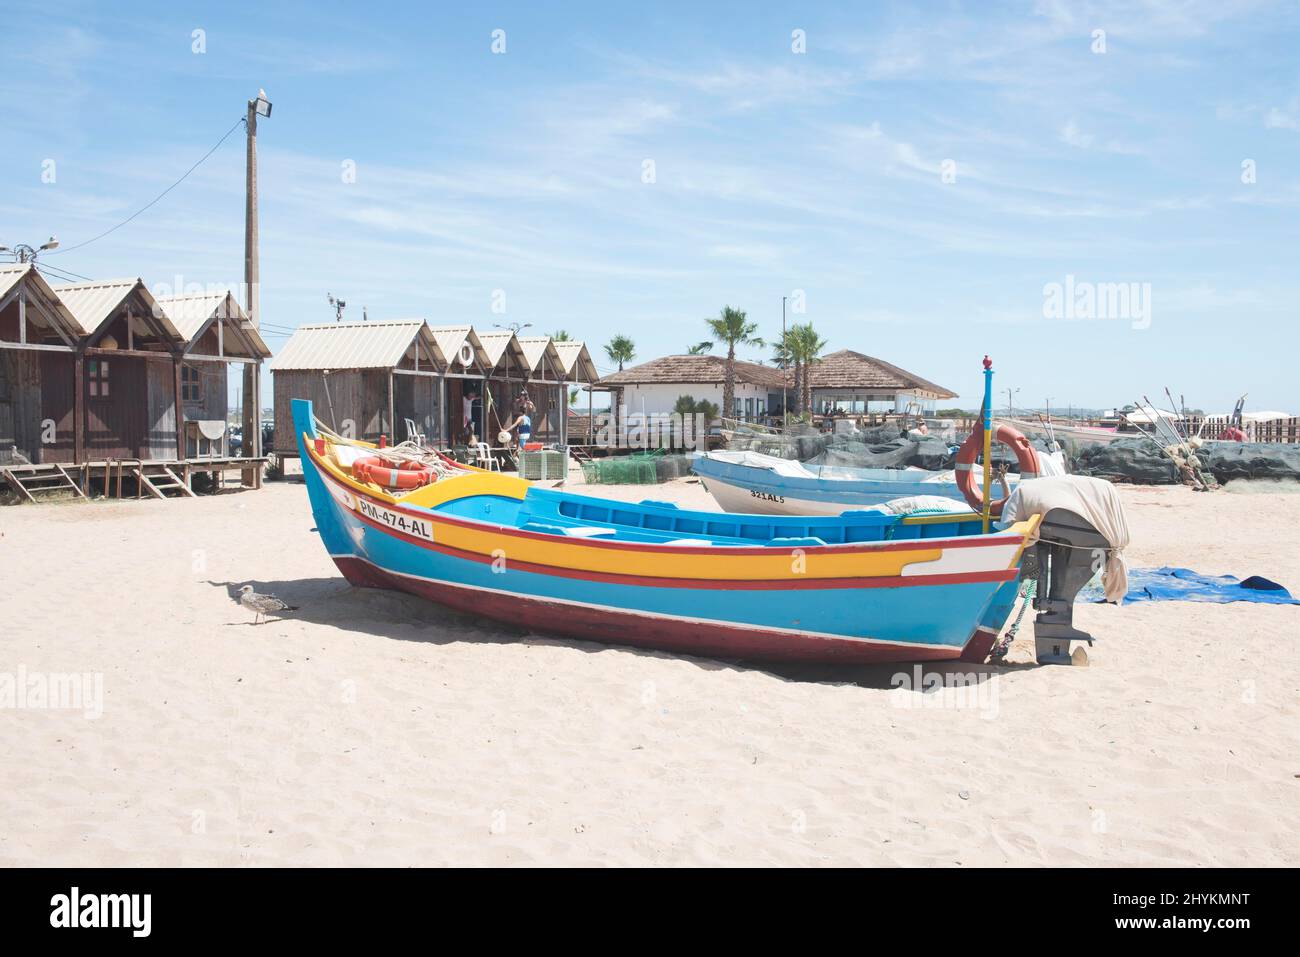 Fishing boats in Armacao de Pera, Algarve, Portugal Stock Photo